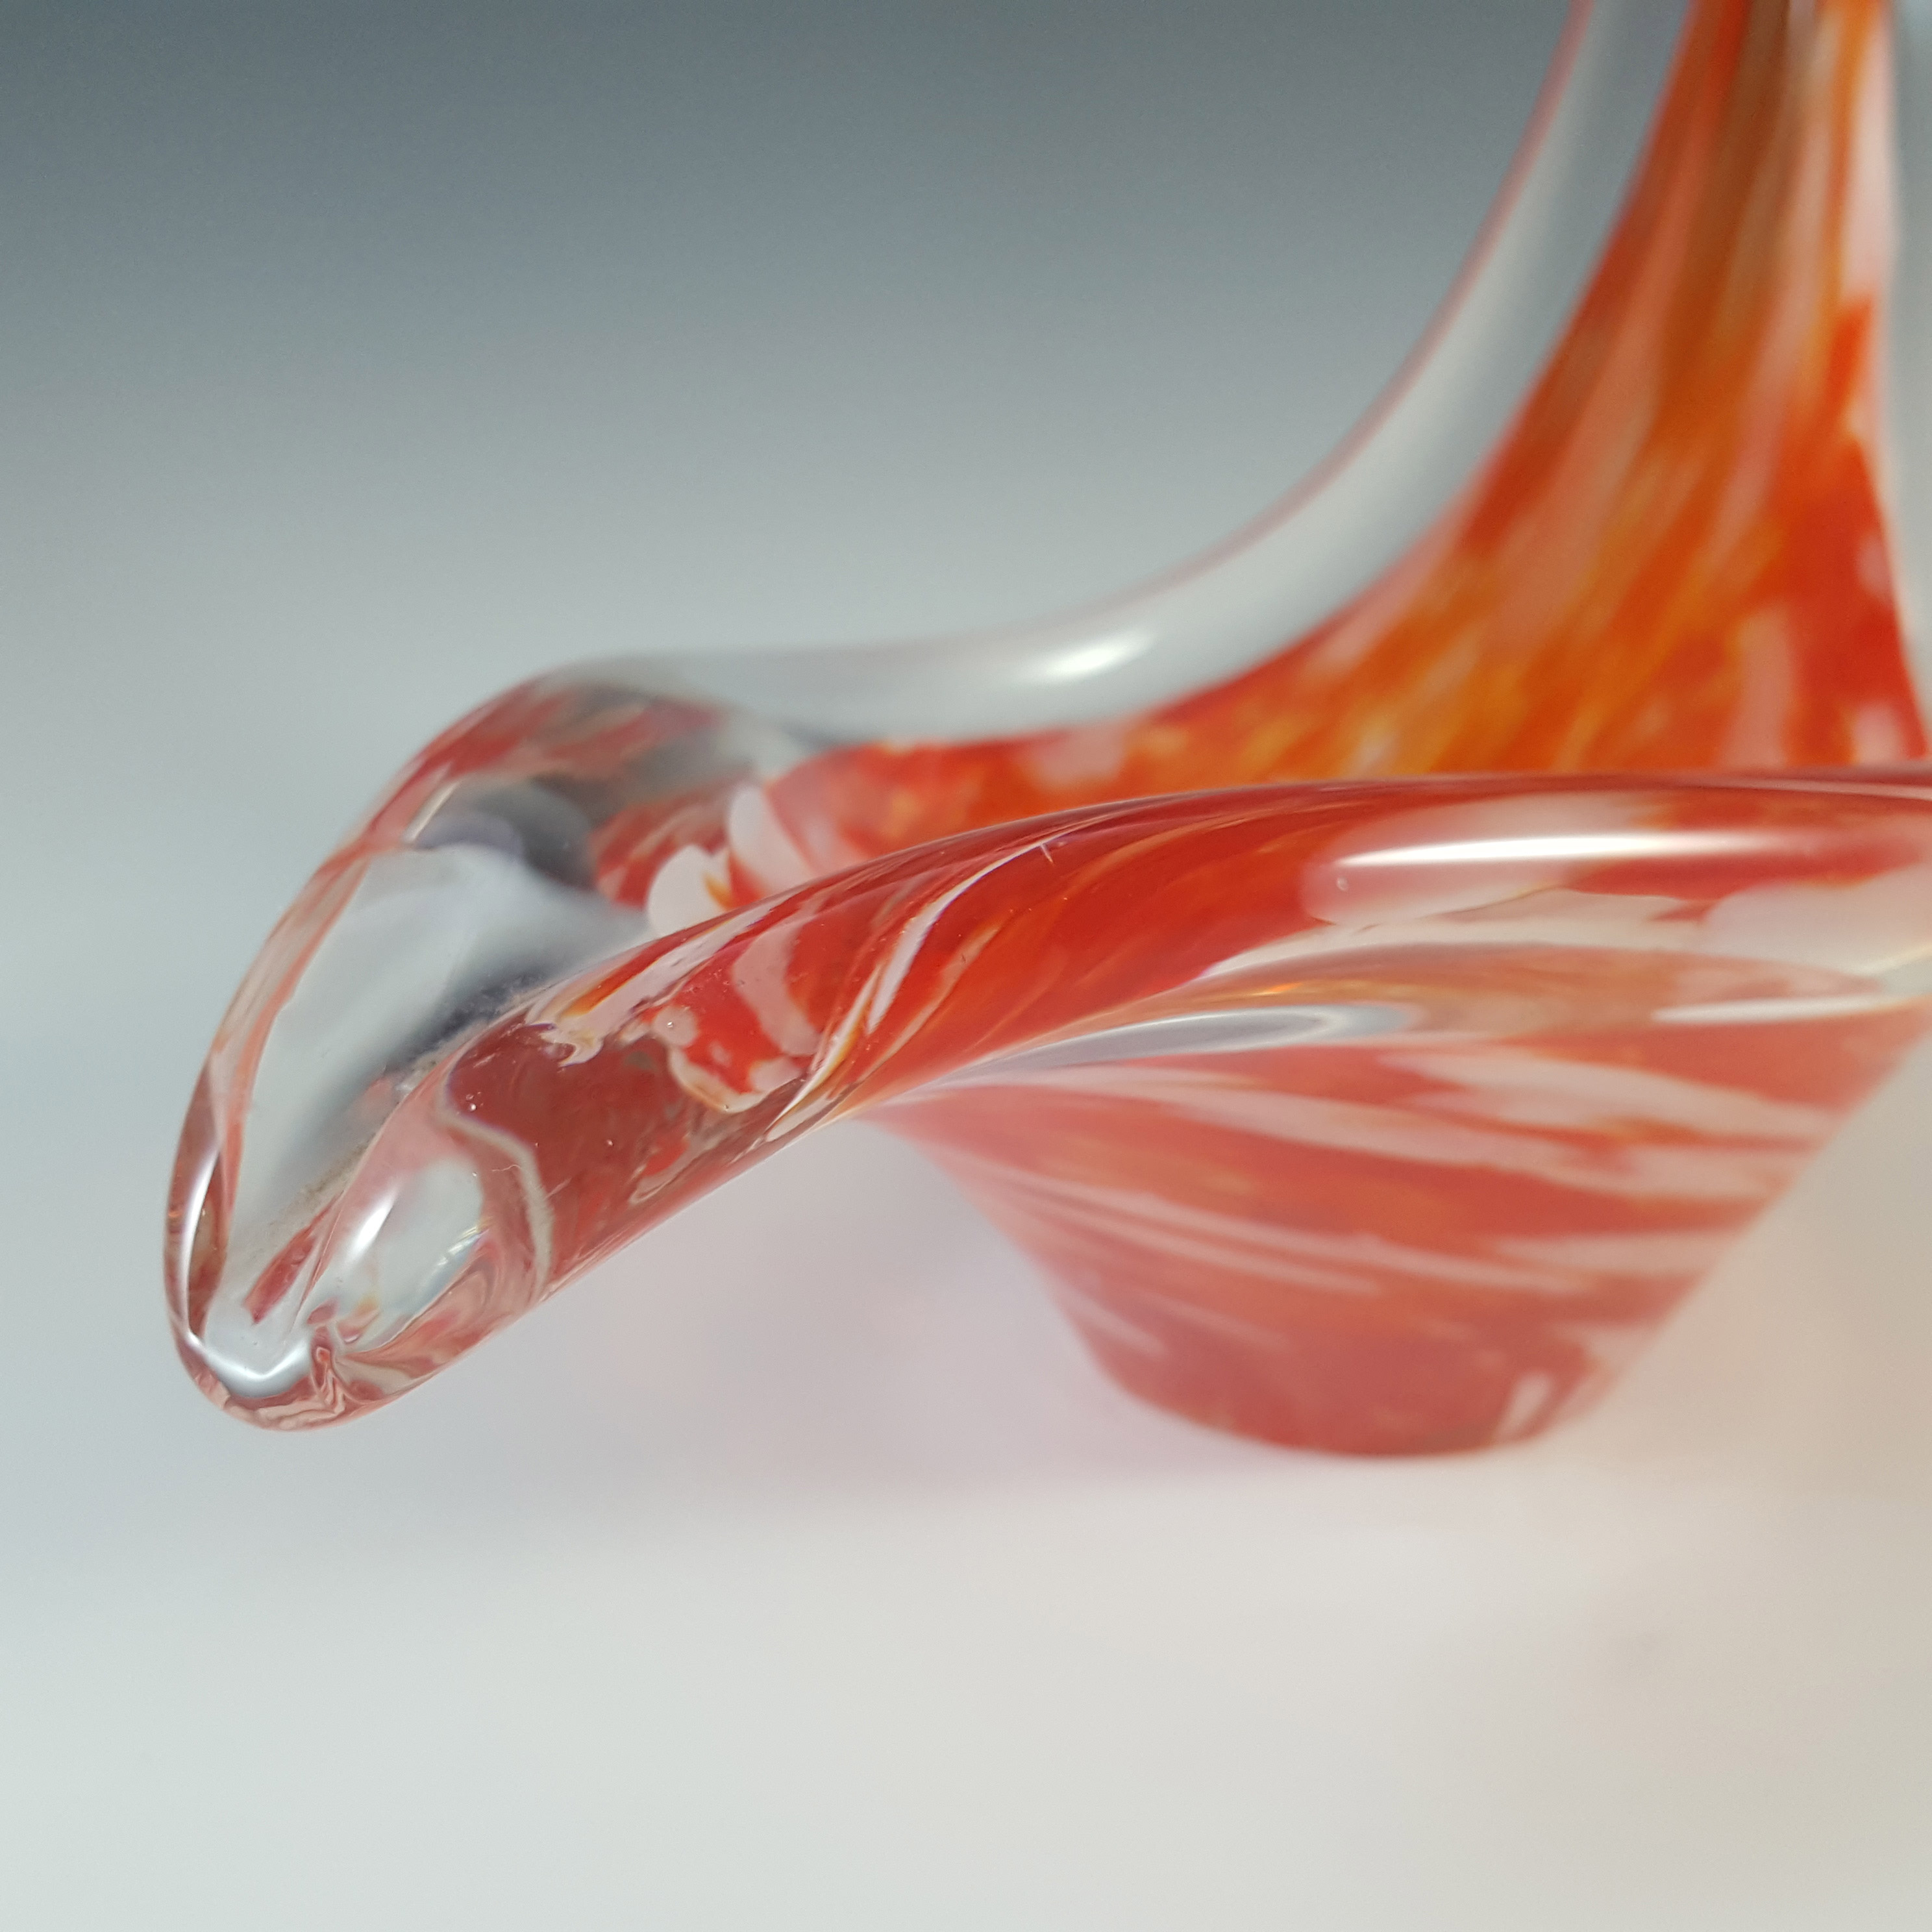 Viartec Murano Style Orange & White Spanish Glass Sculpture Bowl - Click Image to Close